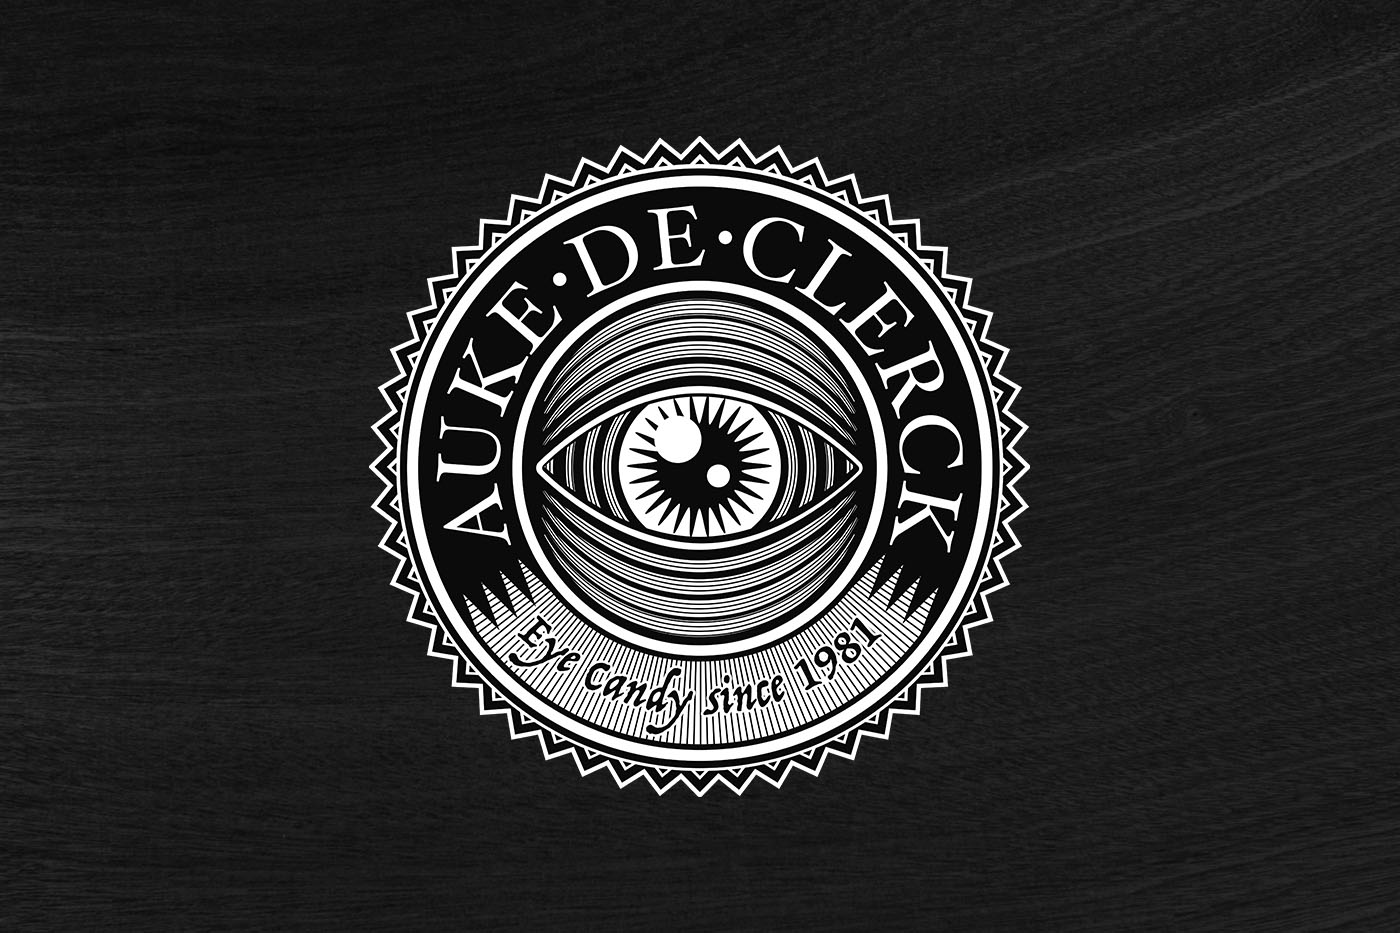 Auke De Clerck Logo